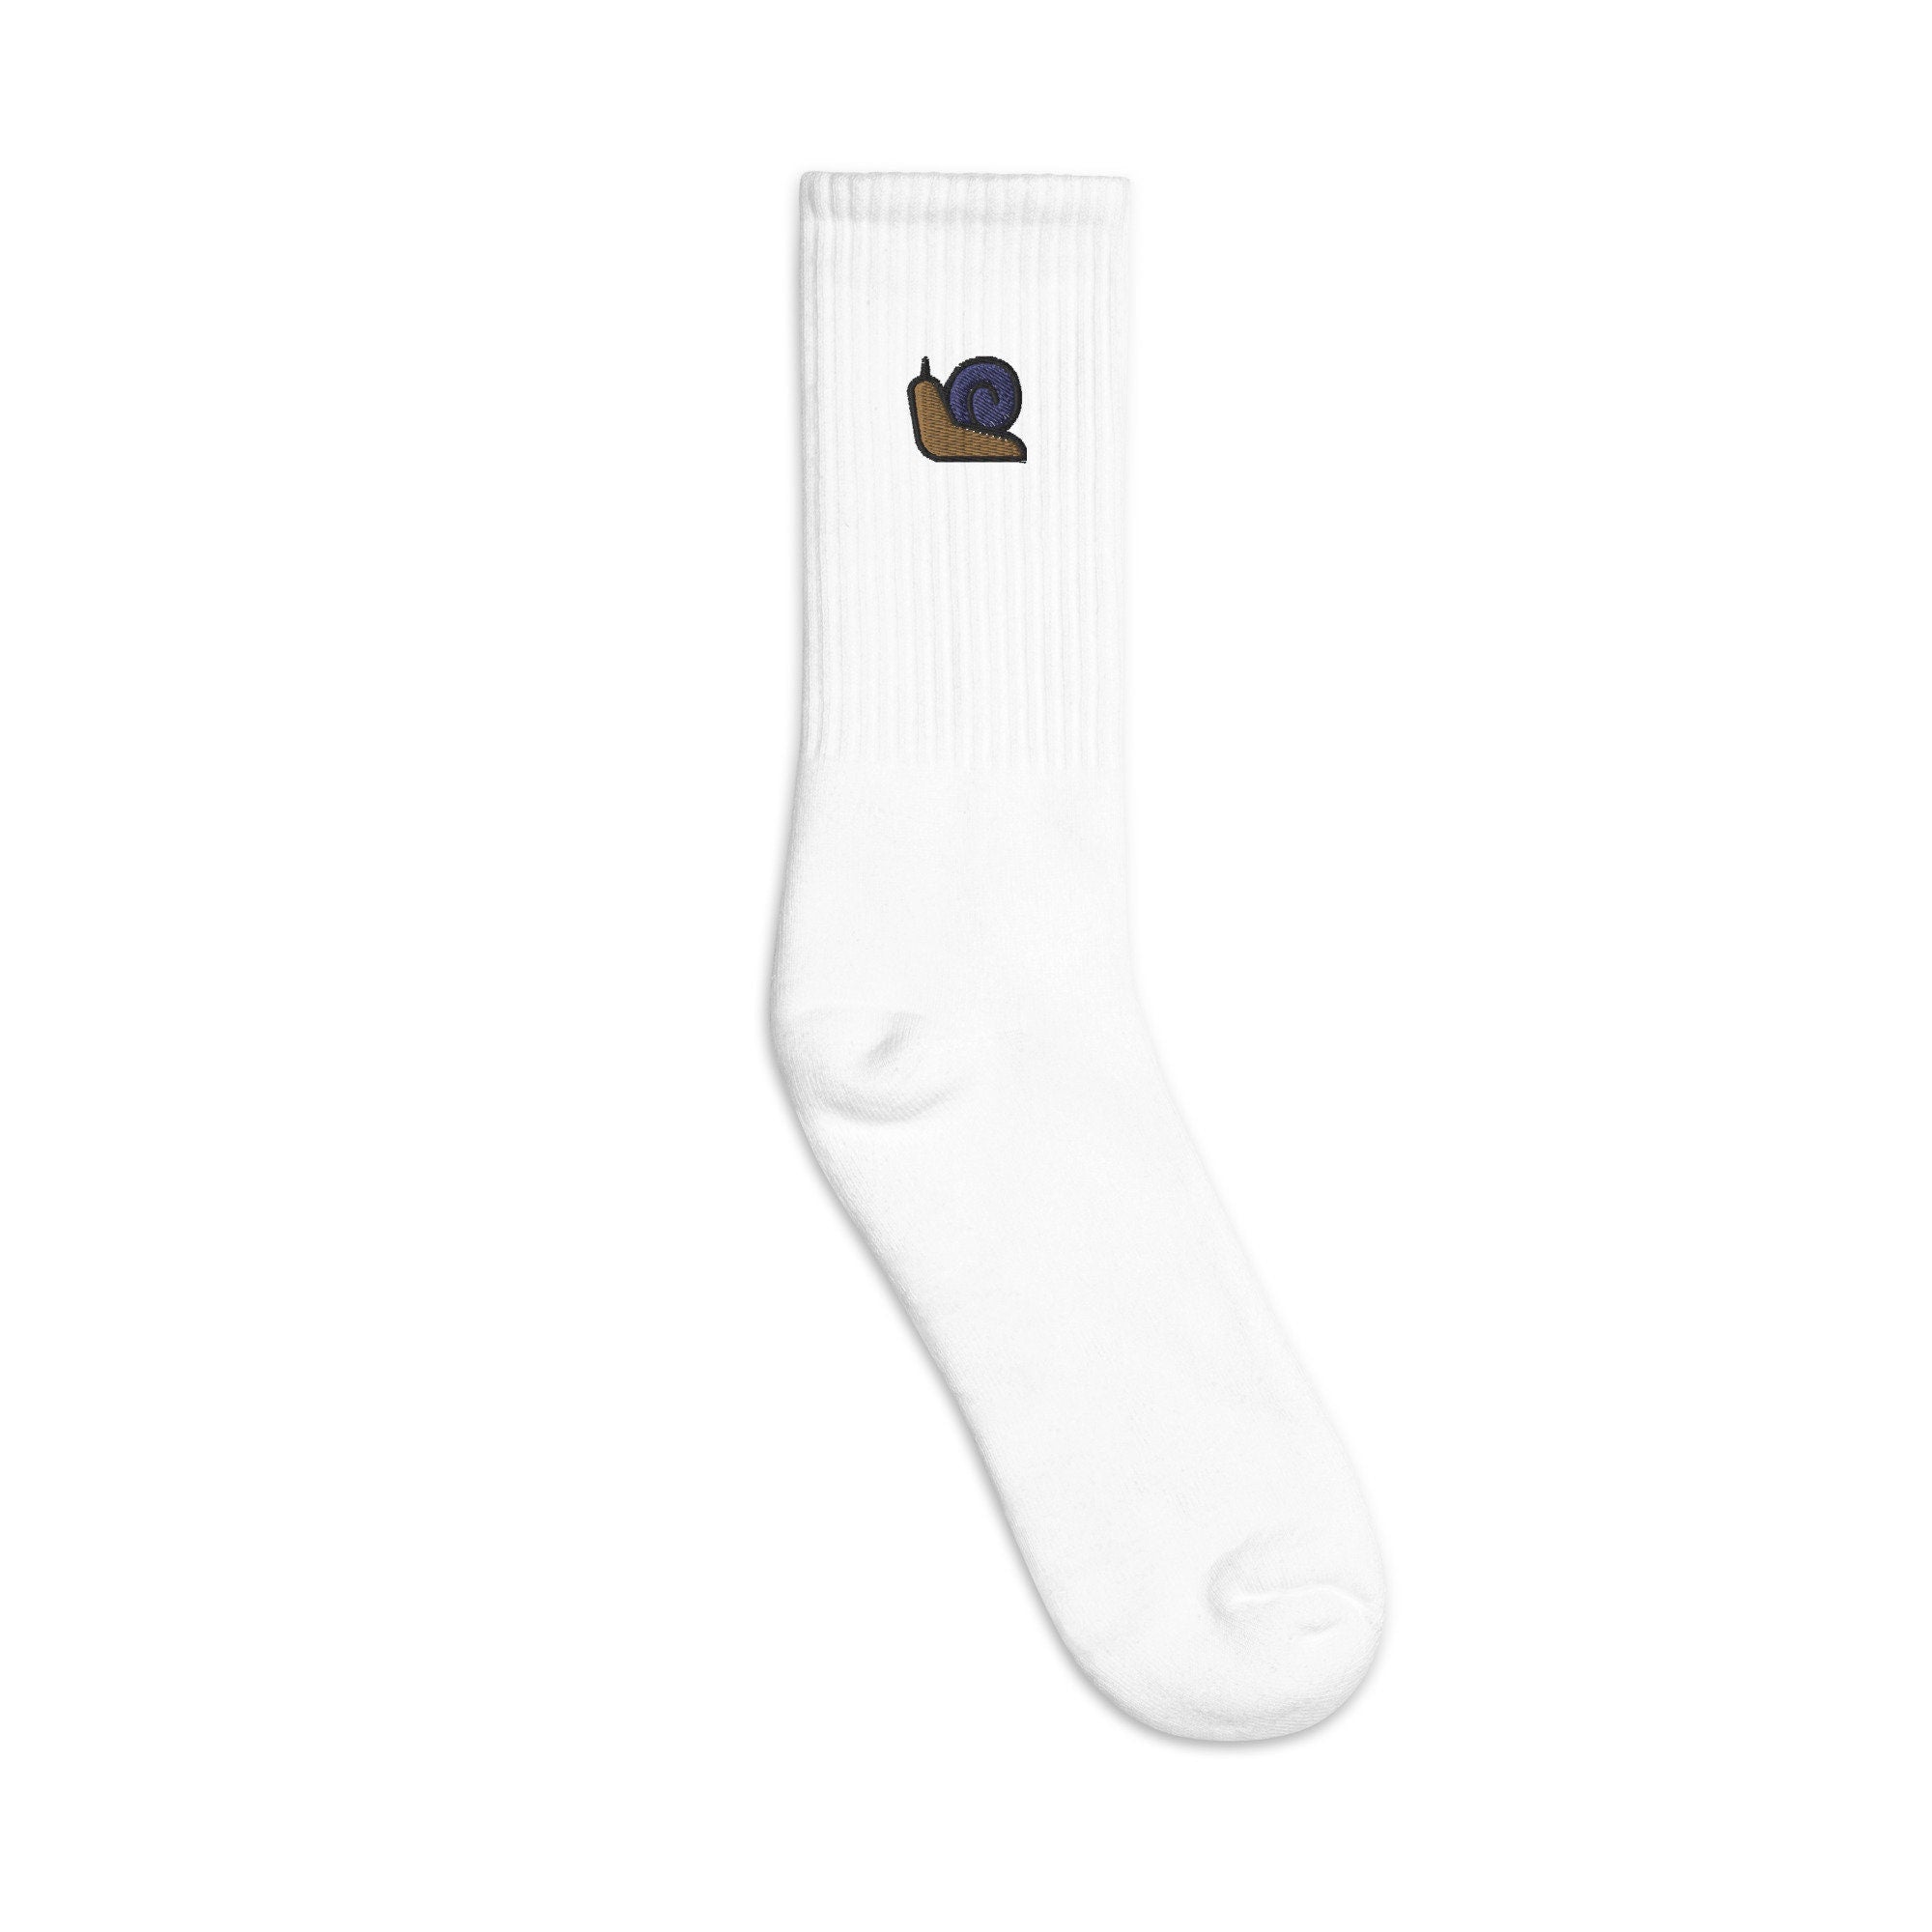 Snail Embroidered Socks, Premium Embroidered Socks, Long Socks Gift - Multiple Colors